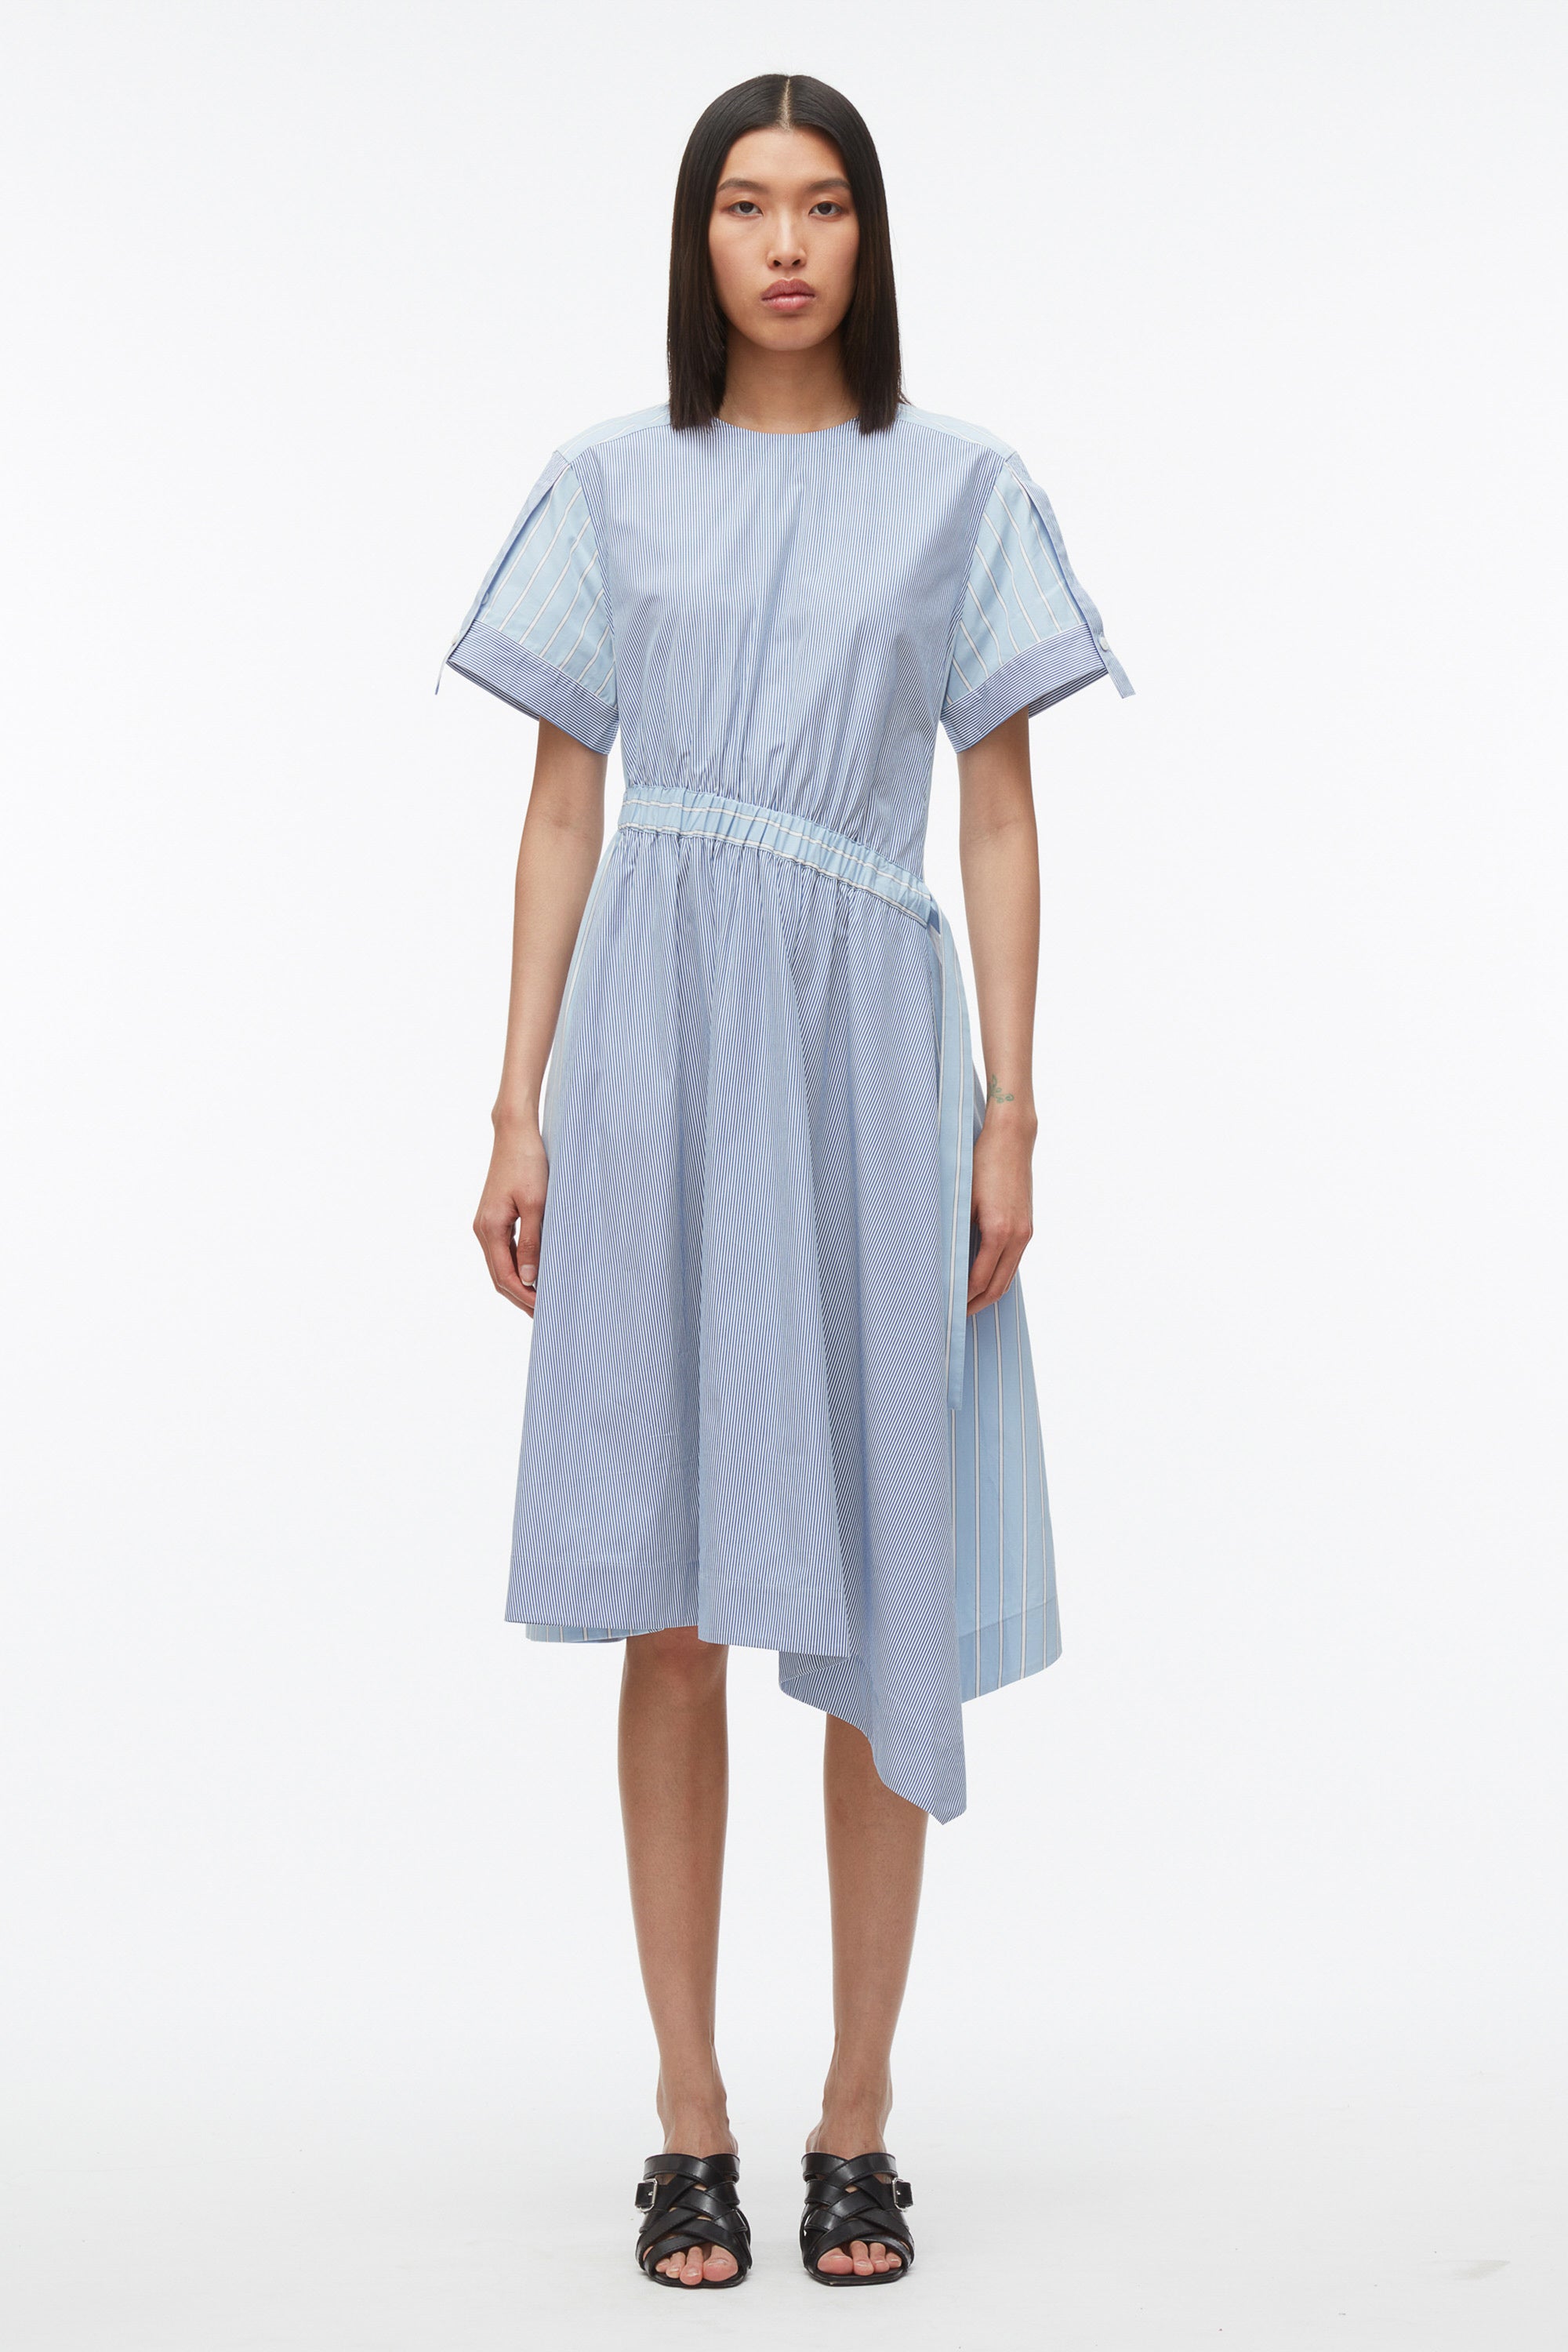 Mix Stripe Poplin Dress – 3.1 Phillip Lim